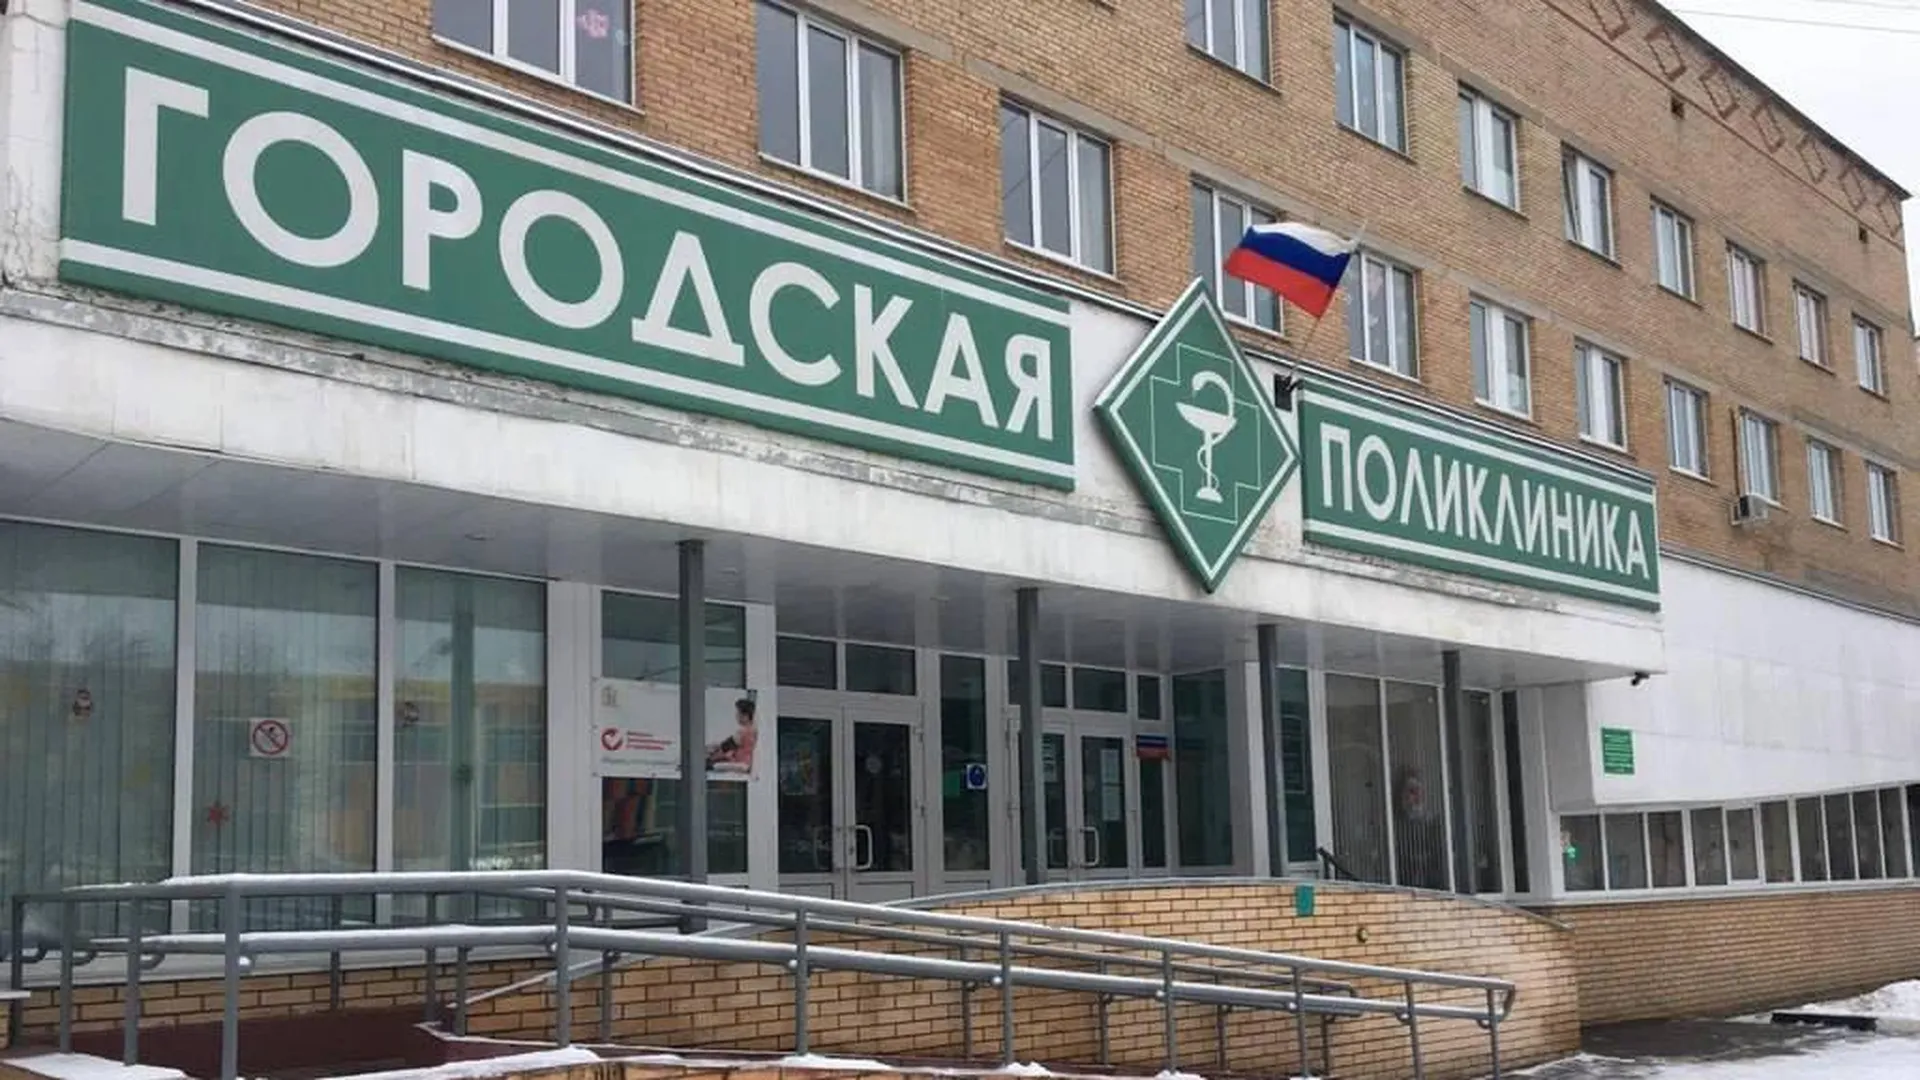 В Городском округе Пушкинский поликлинику и женскую консультацию ждет капитальный ремонт